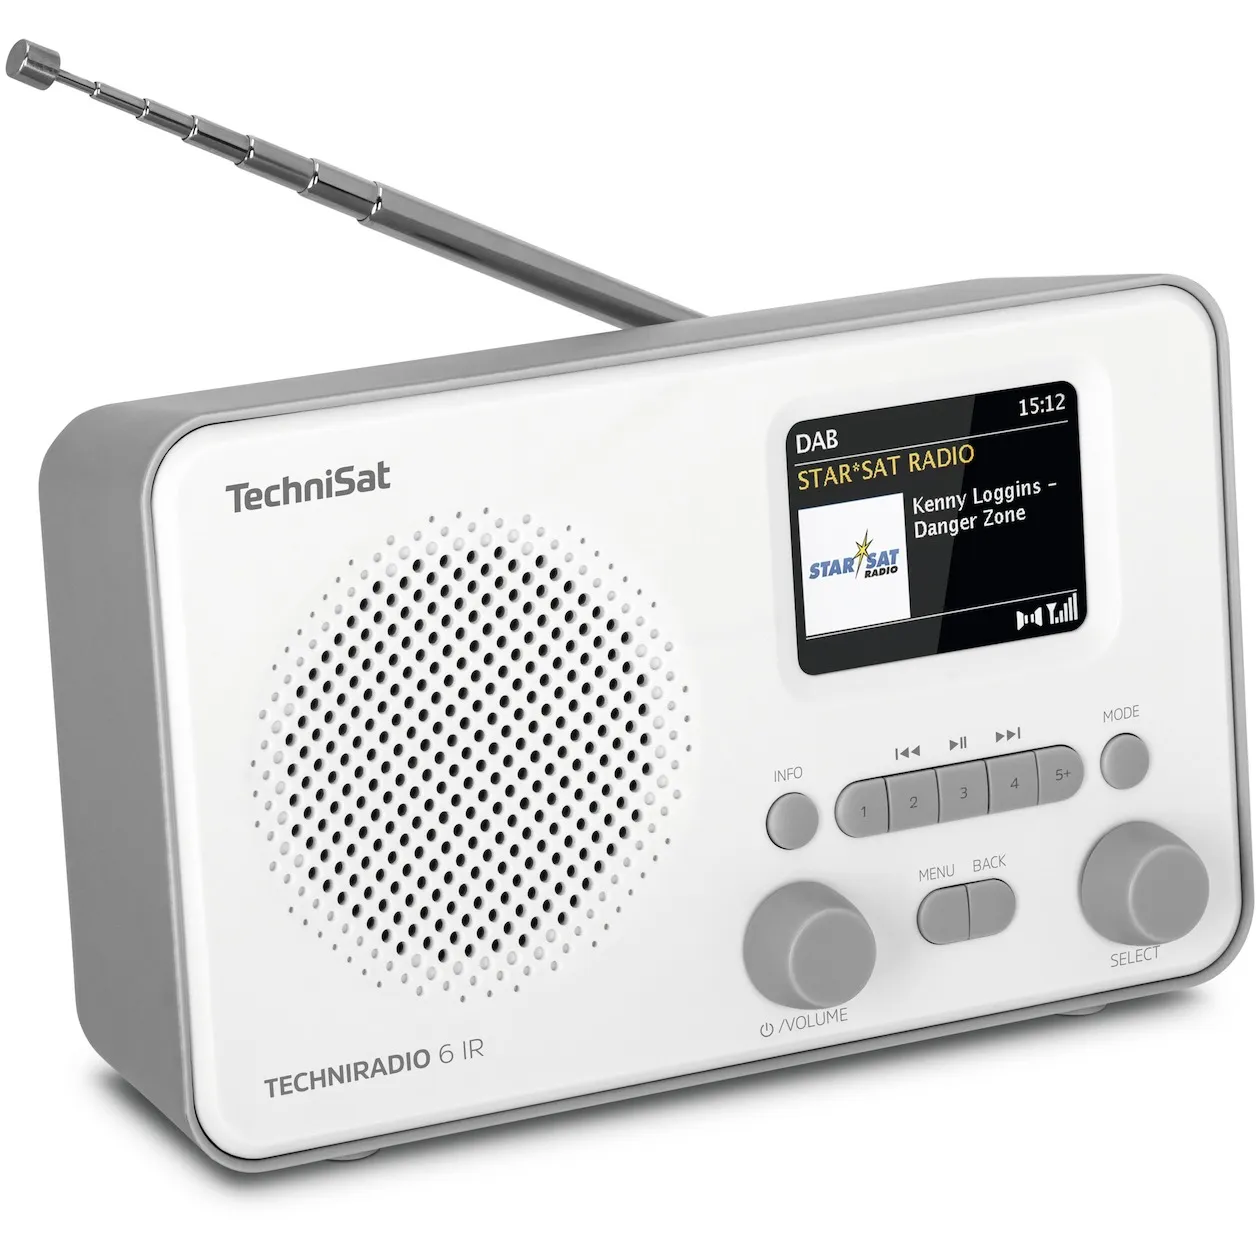 TechniSat Techniradio 6 IR Wit/grijs